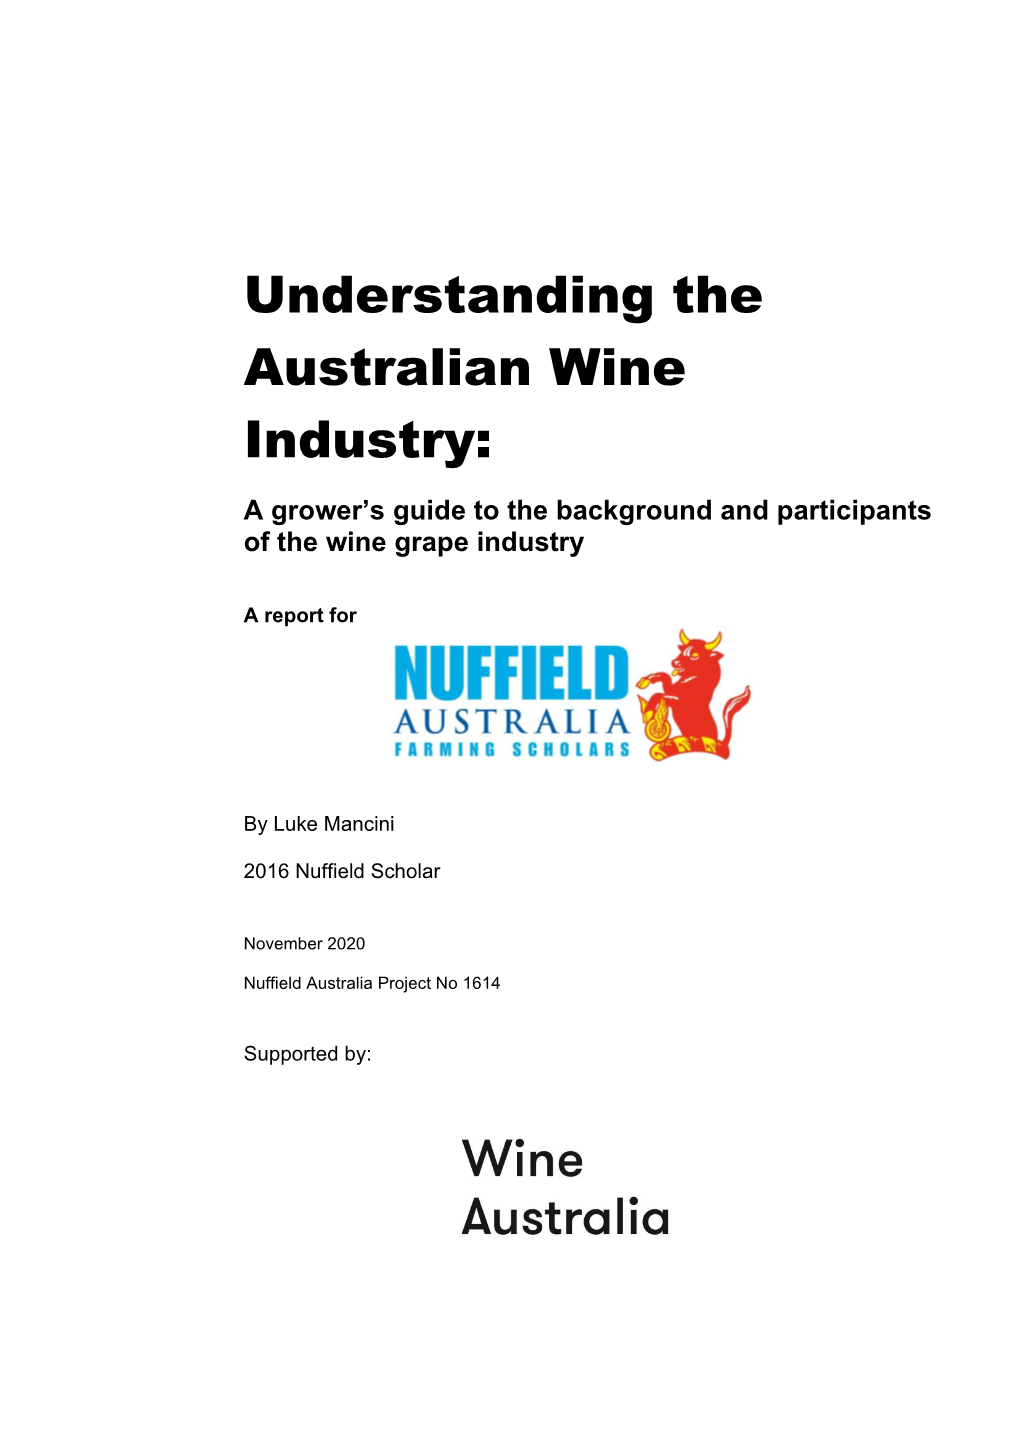 Understanding the Australian Wine Industry